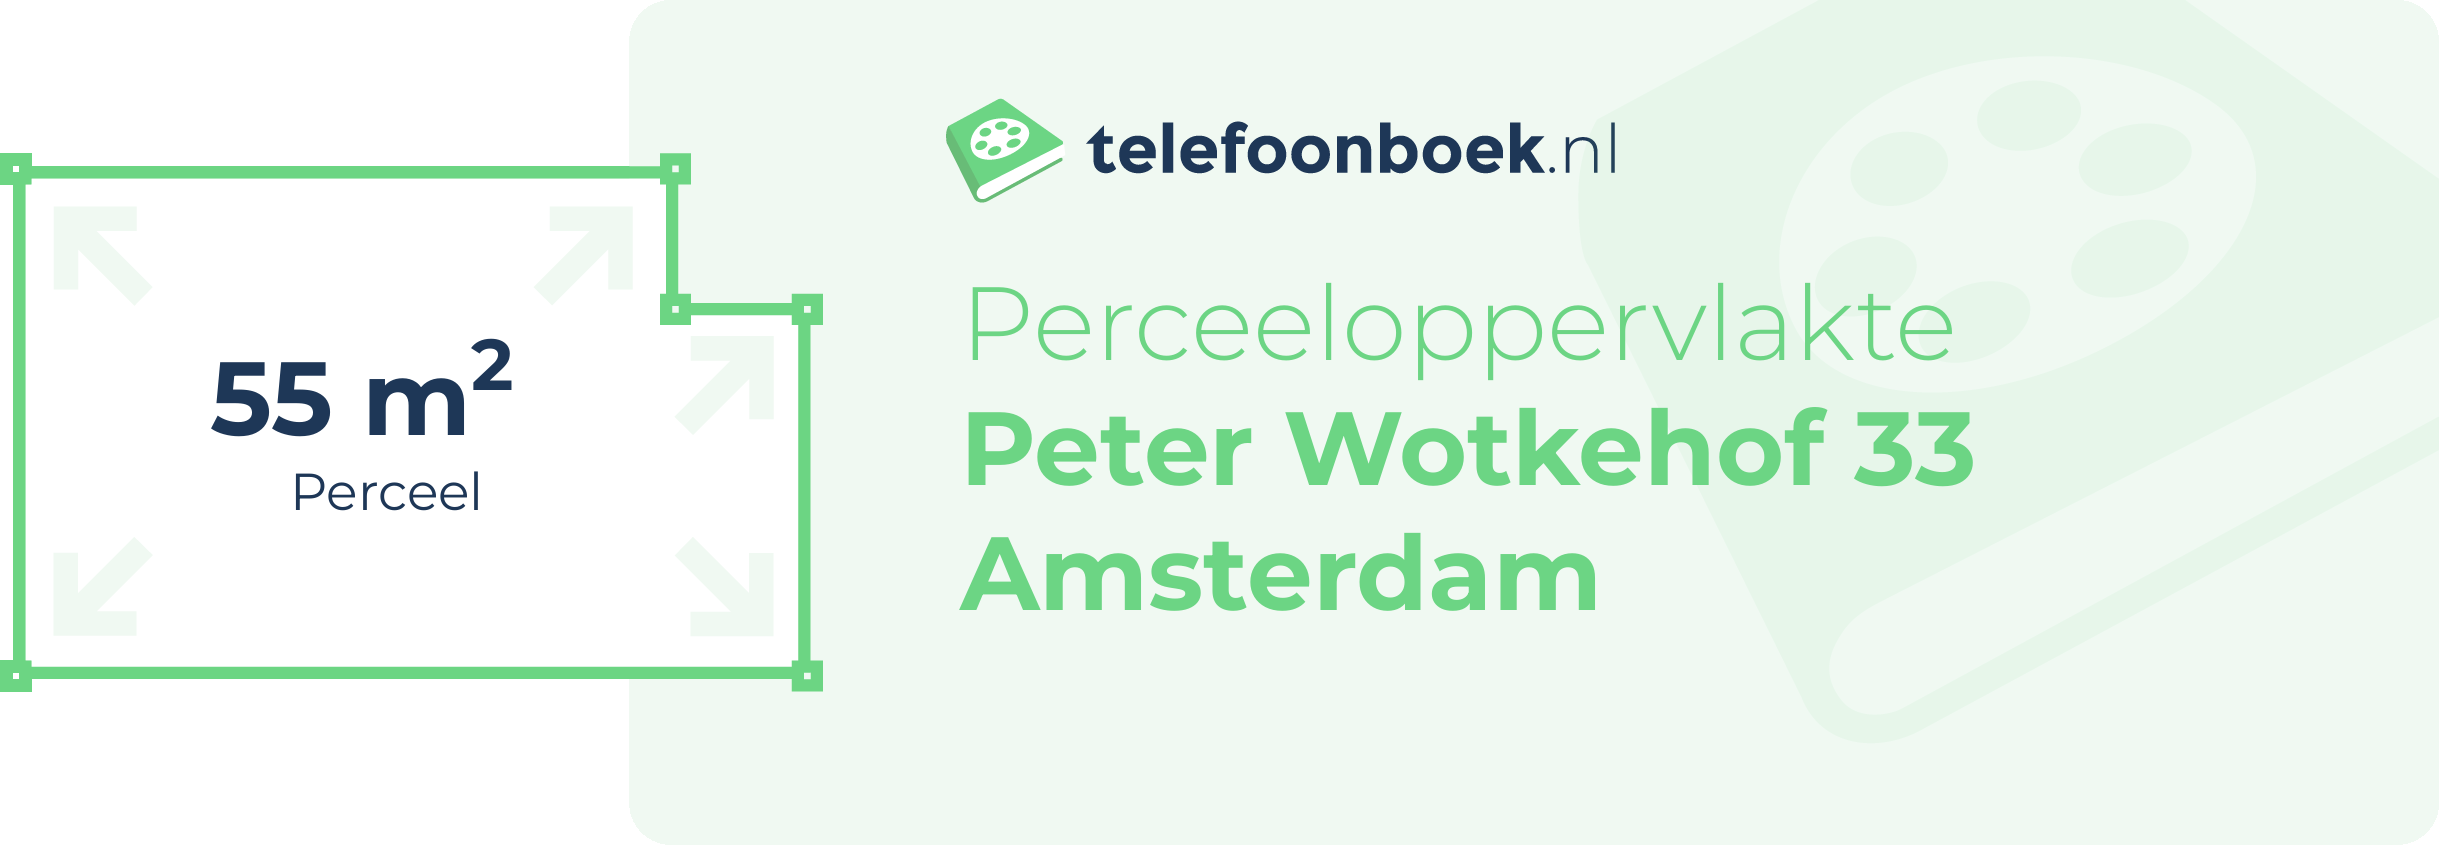 Perceeloppervlakte Peter Wotkehof 33 Amsterdam